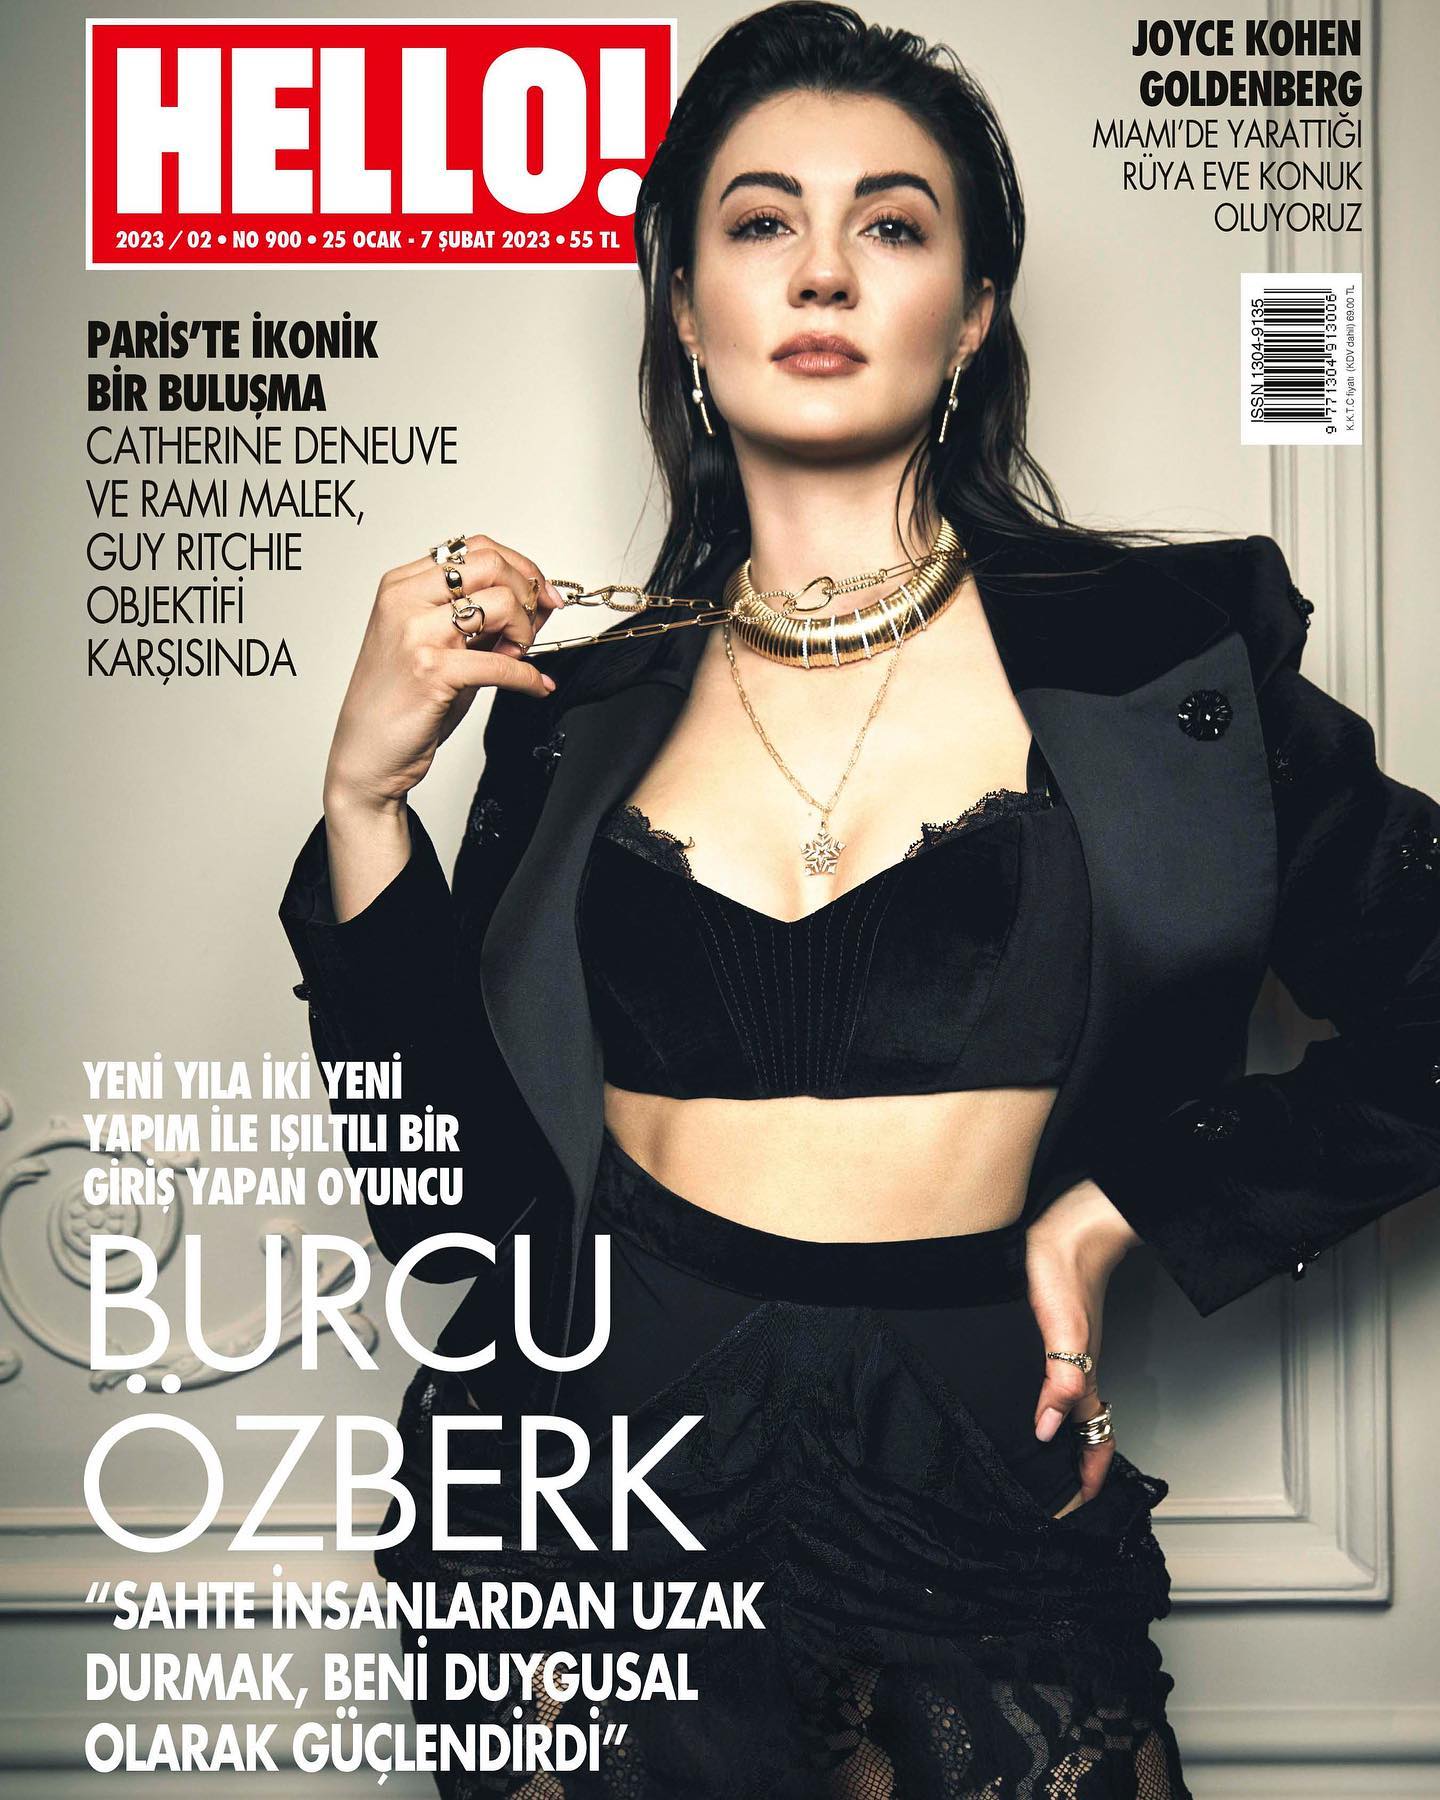 Burcu Özberk hot turkish actress